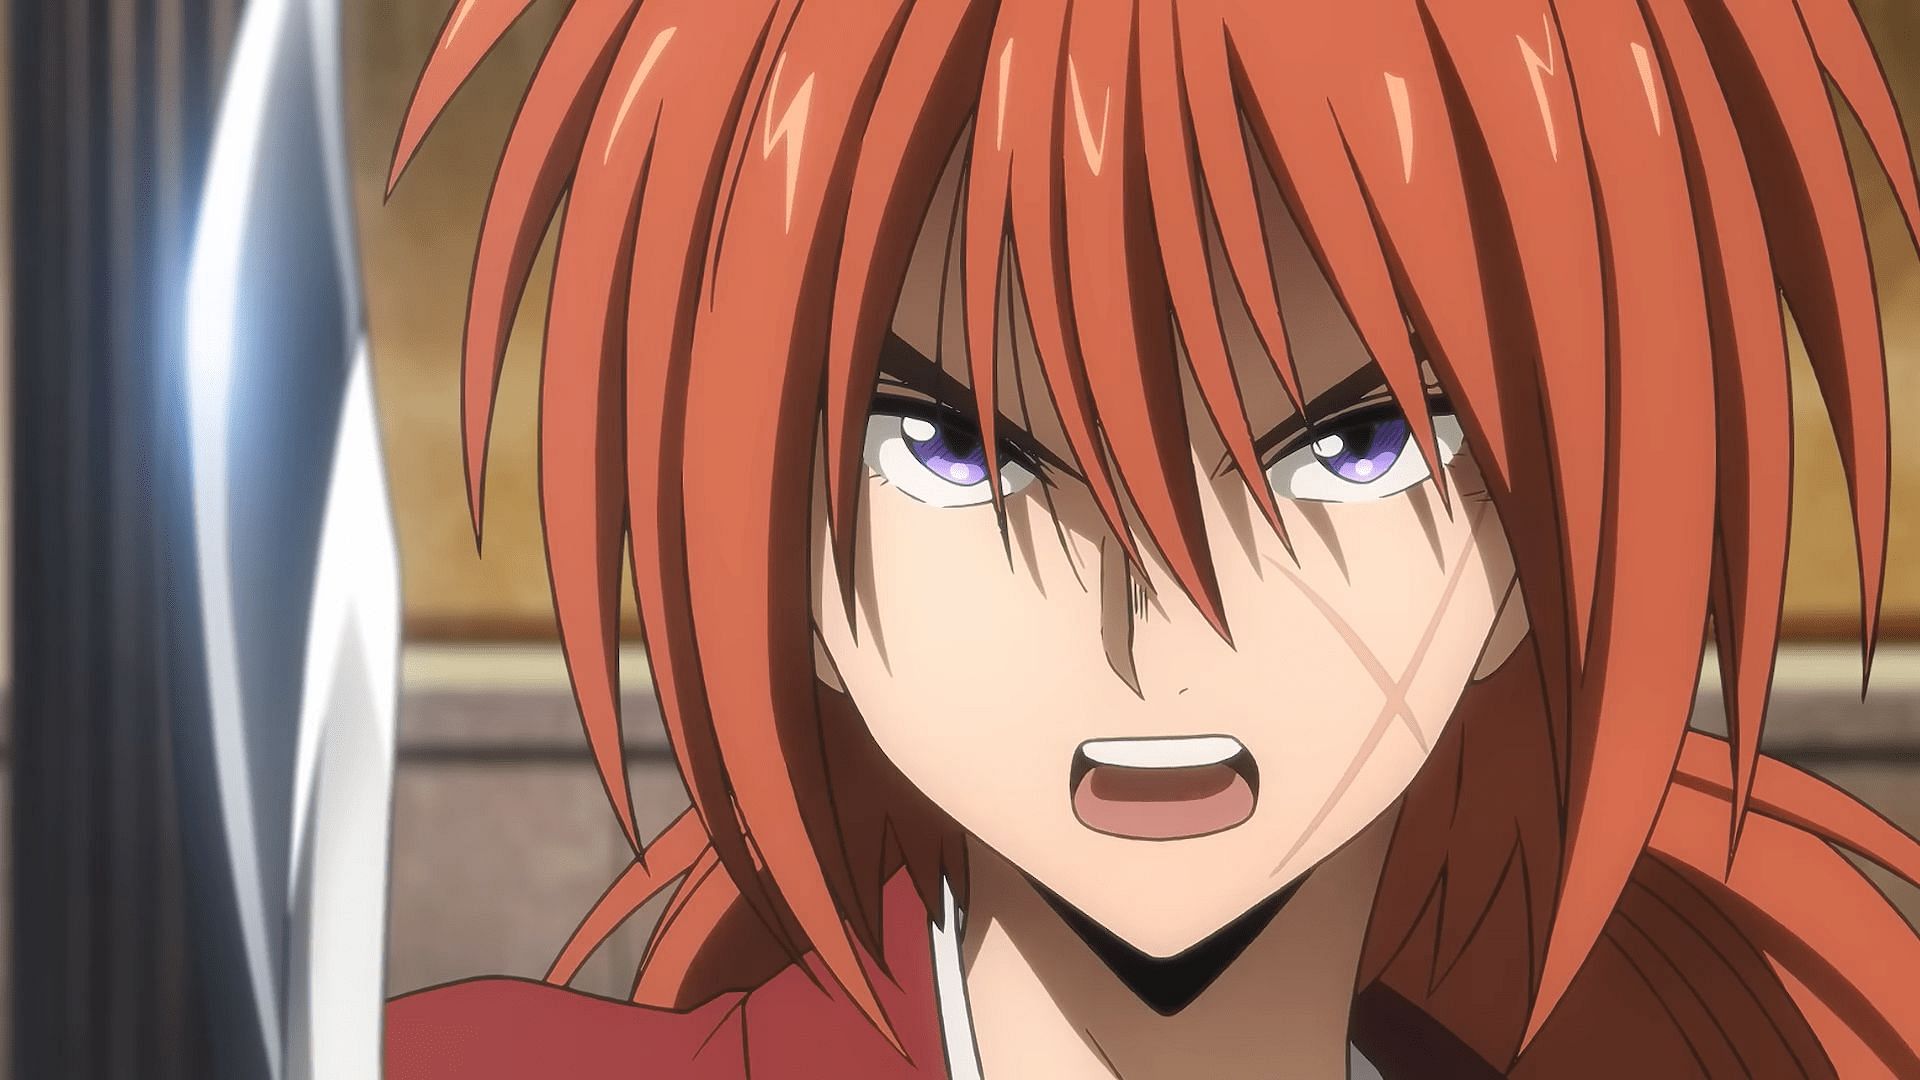 Rurouni Kenshin episode 22: Kenshin